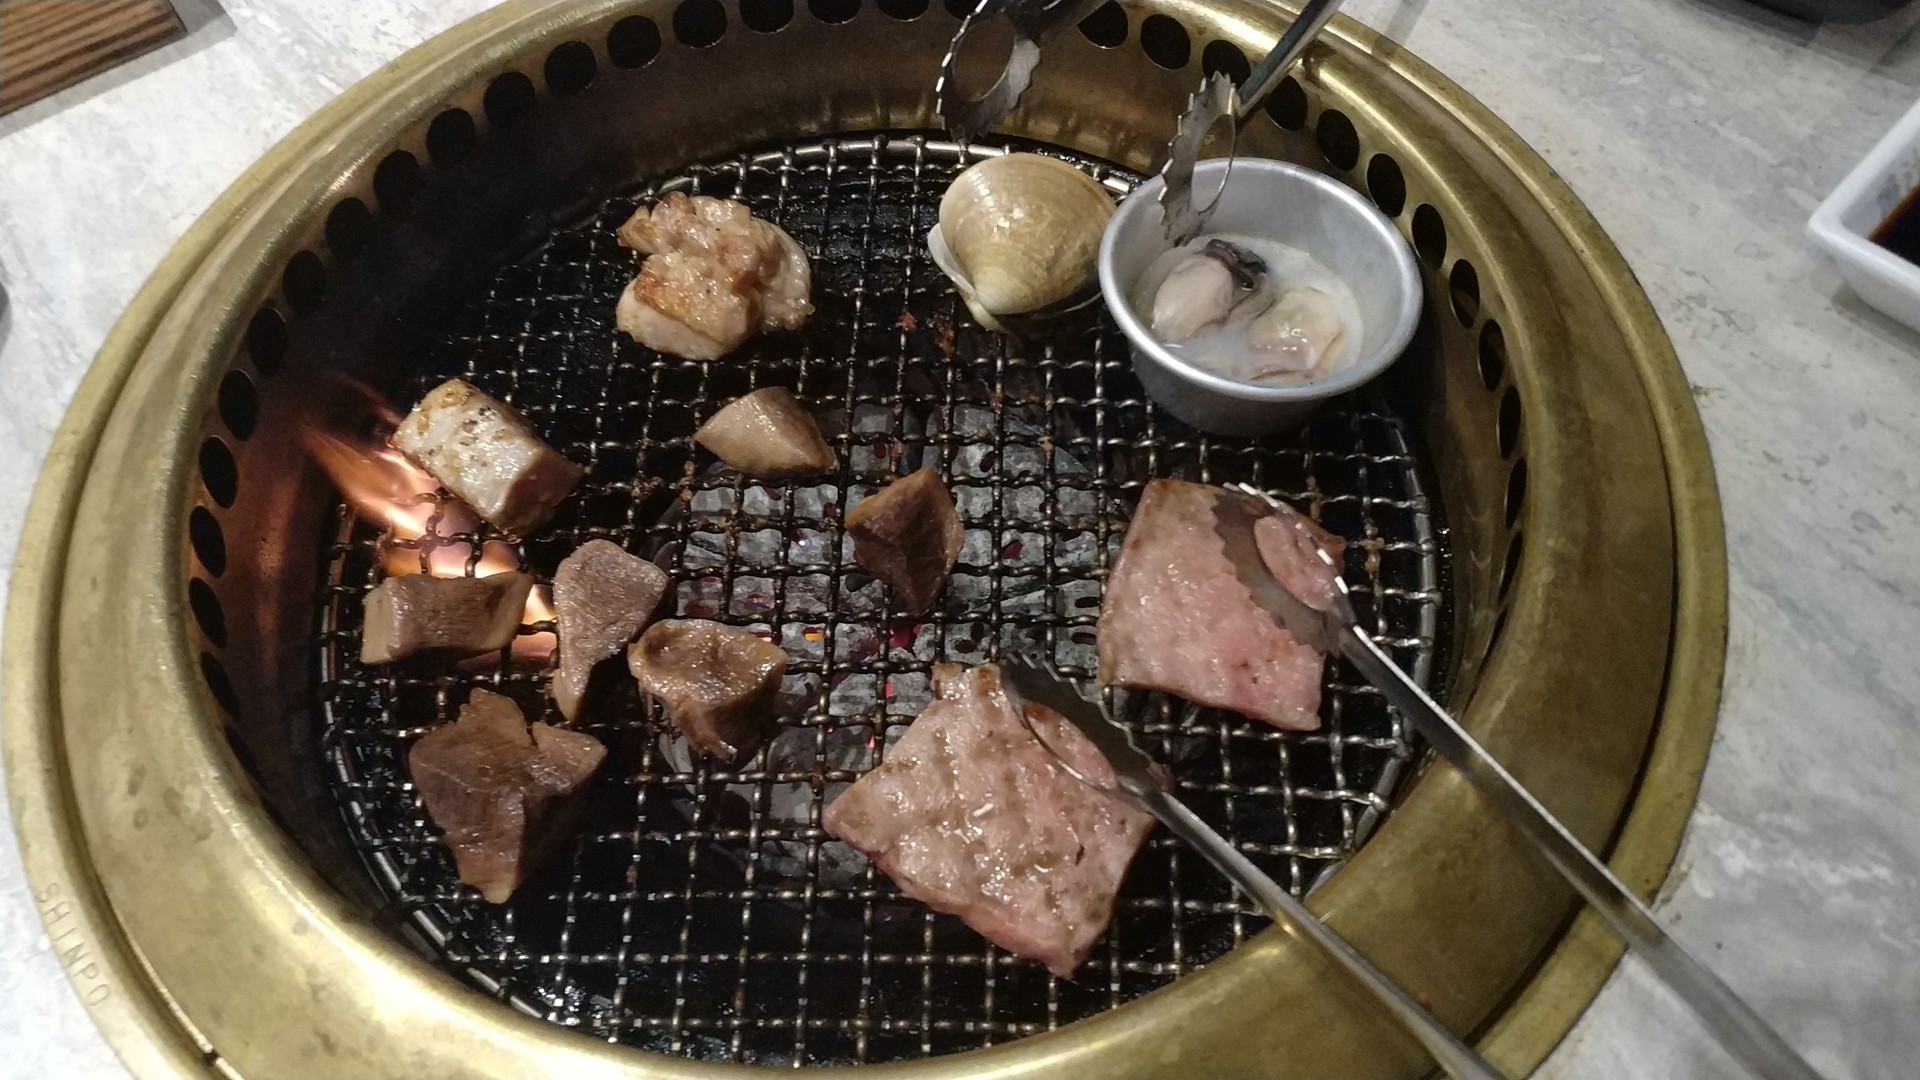 日式烤肉,烤肉烤肉烤肉啊,烤肉肉肉肉肉肉,烤肉吗,烤肉串